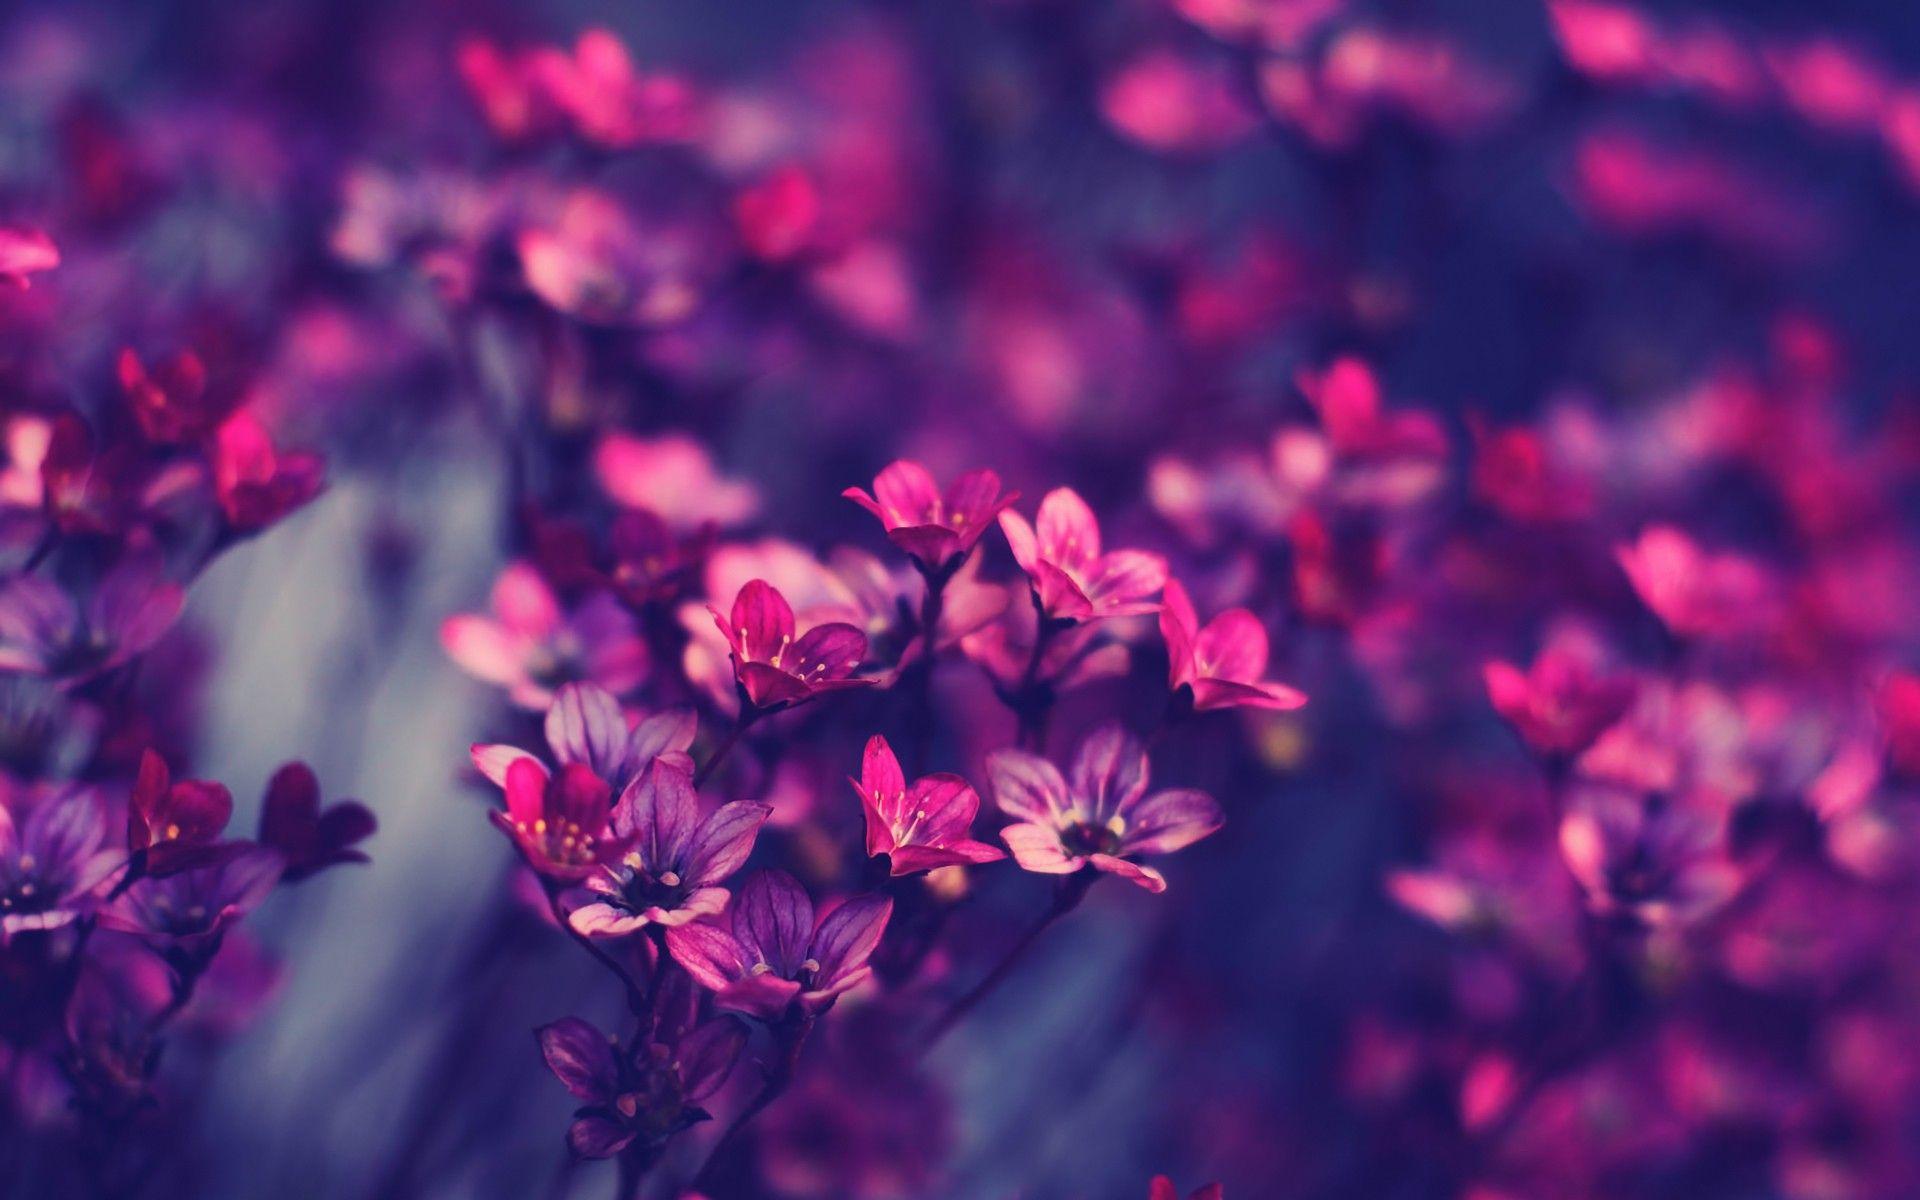 1920x1200 Tải xuống miễn phí 10 Hình nền hoa tuyệt đẹp trên màn hình rộng DezineGuide [1920x1200] cho Máy tính để bàn, Di động & Máy tính bảng của bạn.  Khám phá Nền Hoa Tím.  Nền hoa màu tím, Hình nền hoa màu tím, Nền hoa màu tím